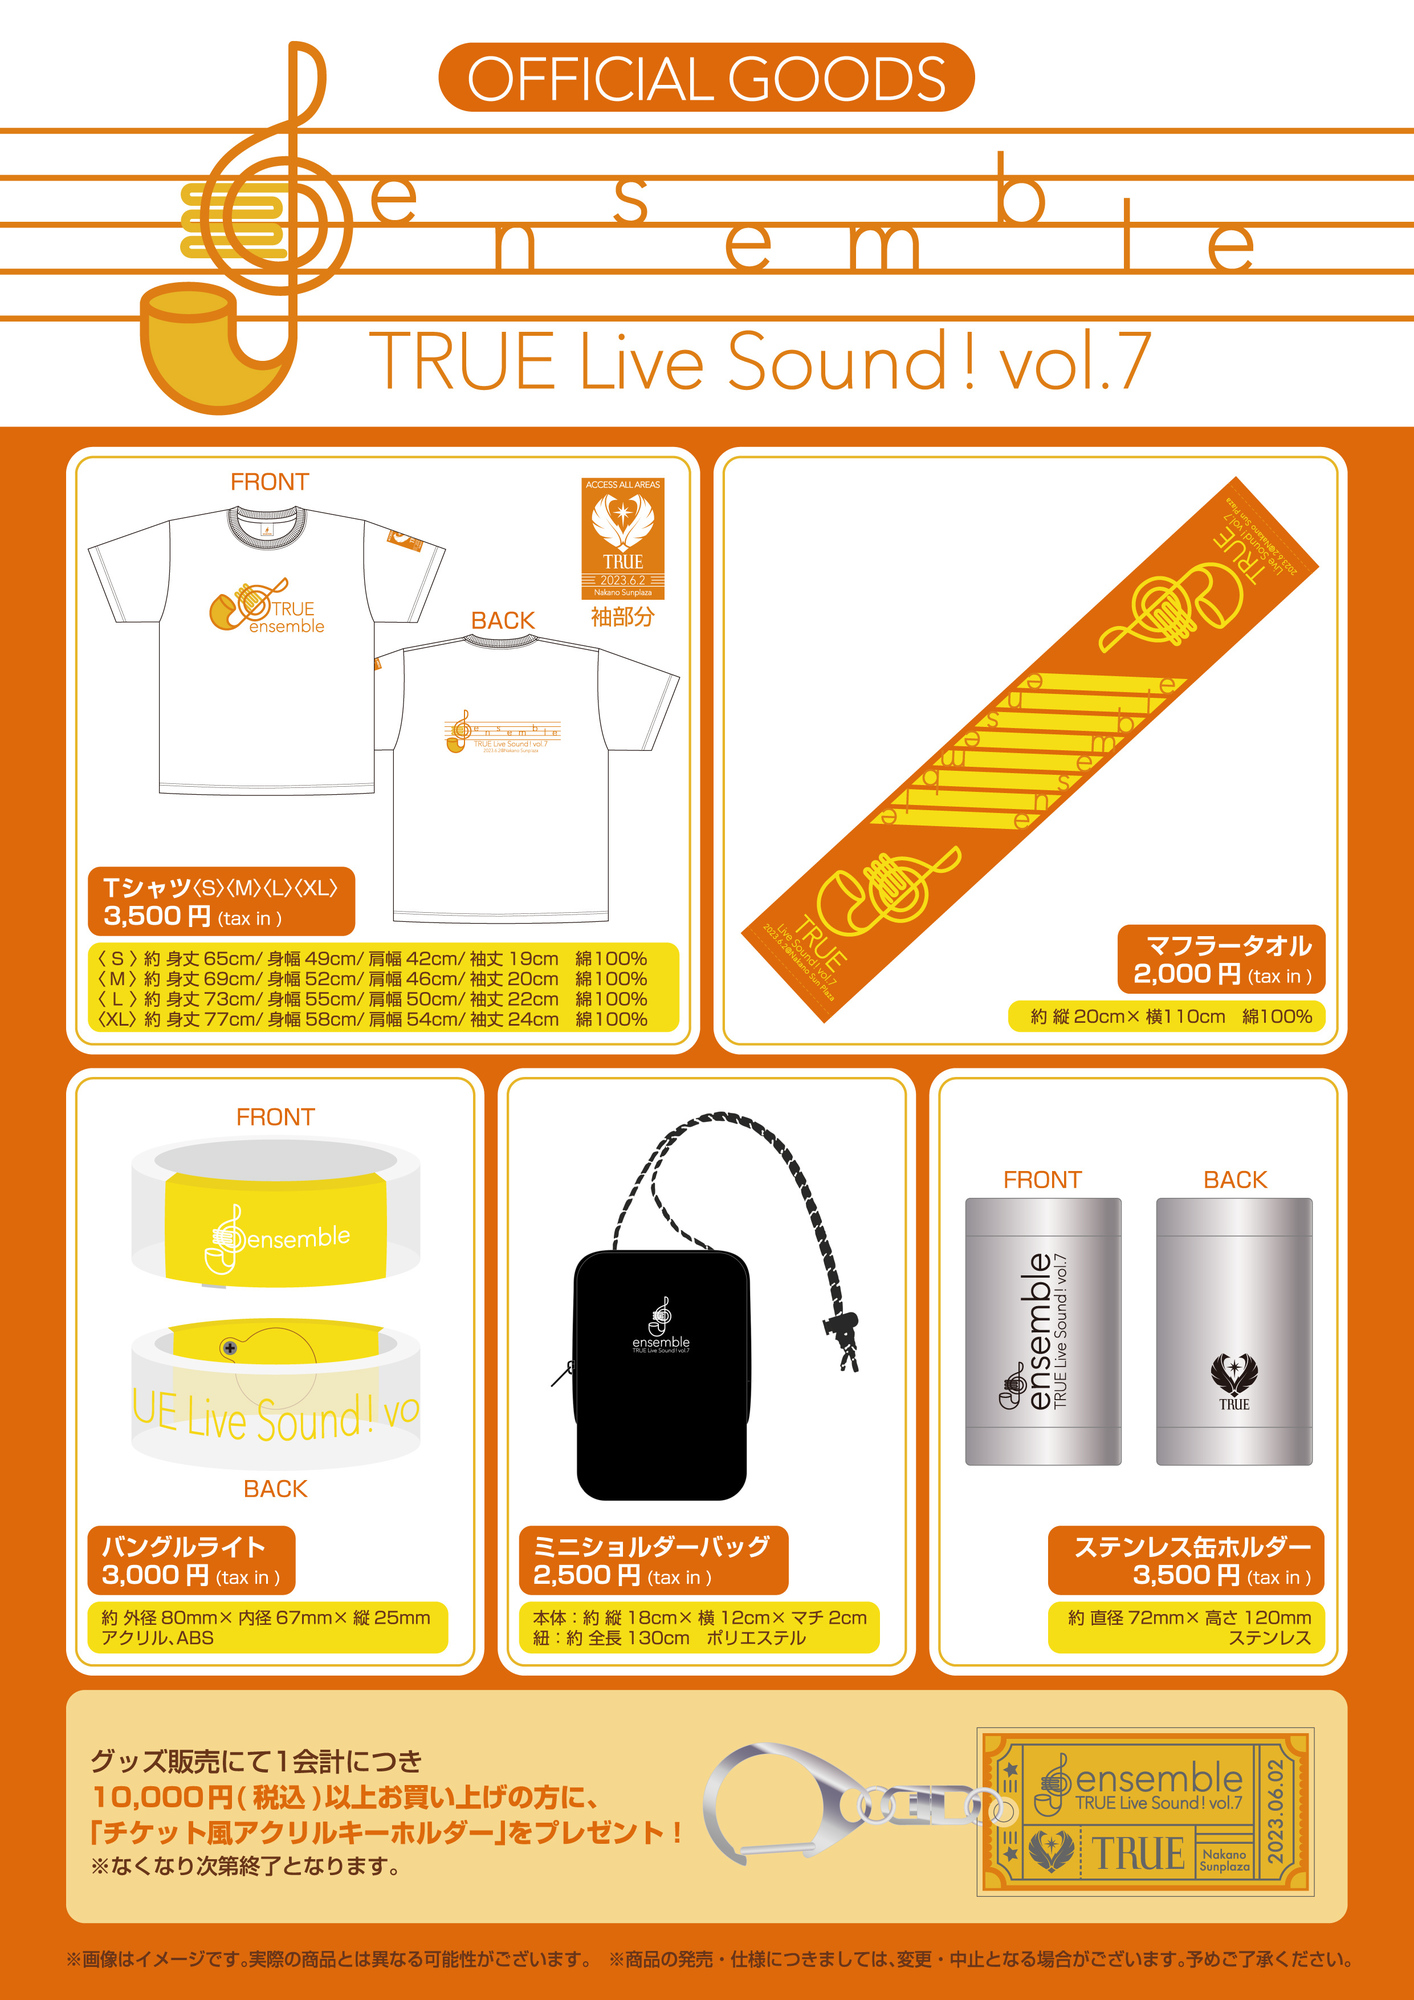 さよなら中野サンプラザ音楽祭」TRUE Live Sound! vol.7